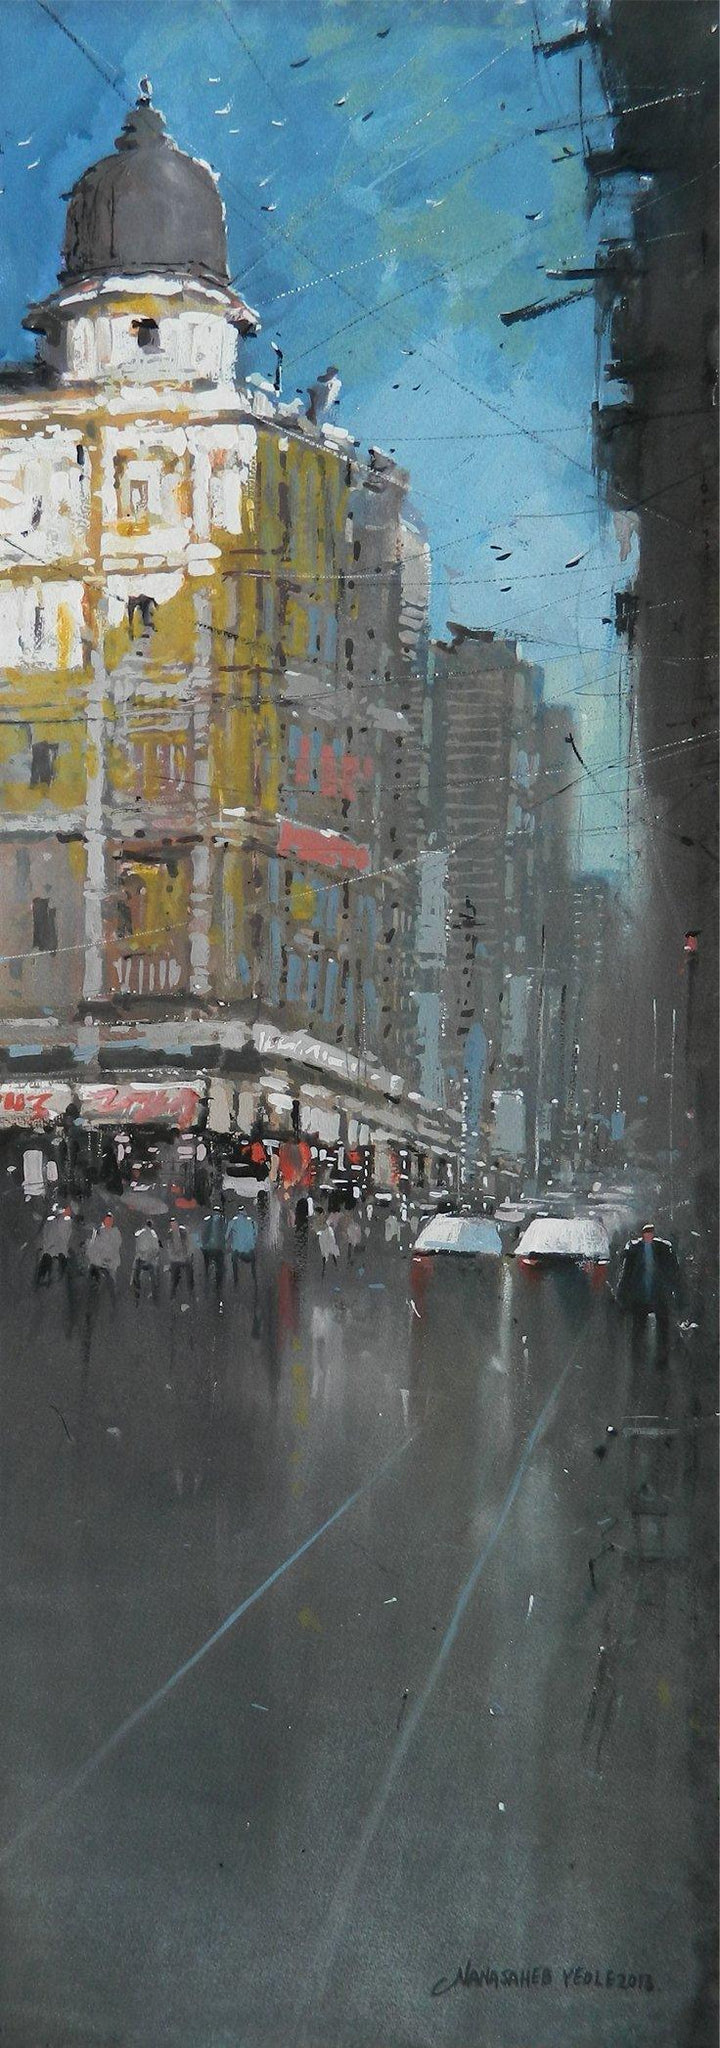 Bombay Street Painting by Nanasaheb Yeole | ArtZolo.com